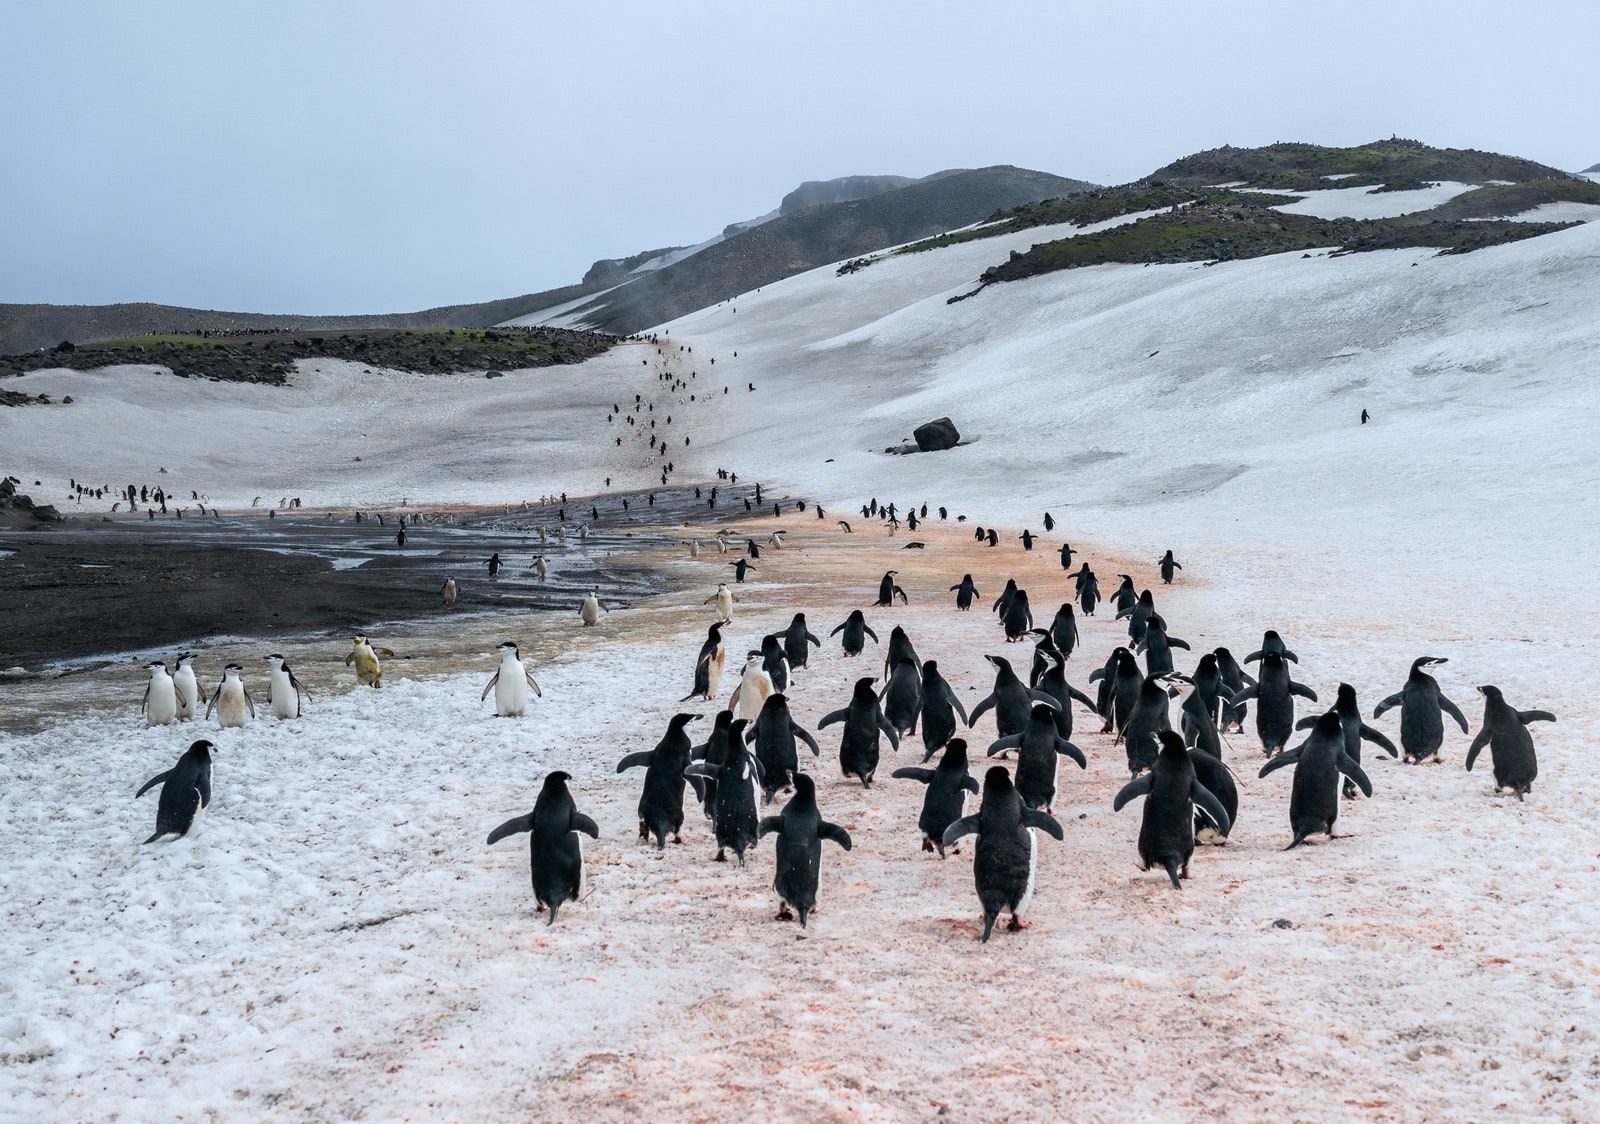 К пингвинам подходить запрещено а вот им можно туристов даже трогать  клювами